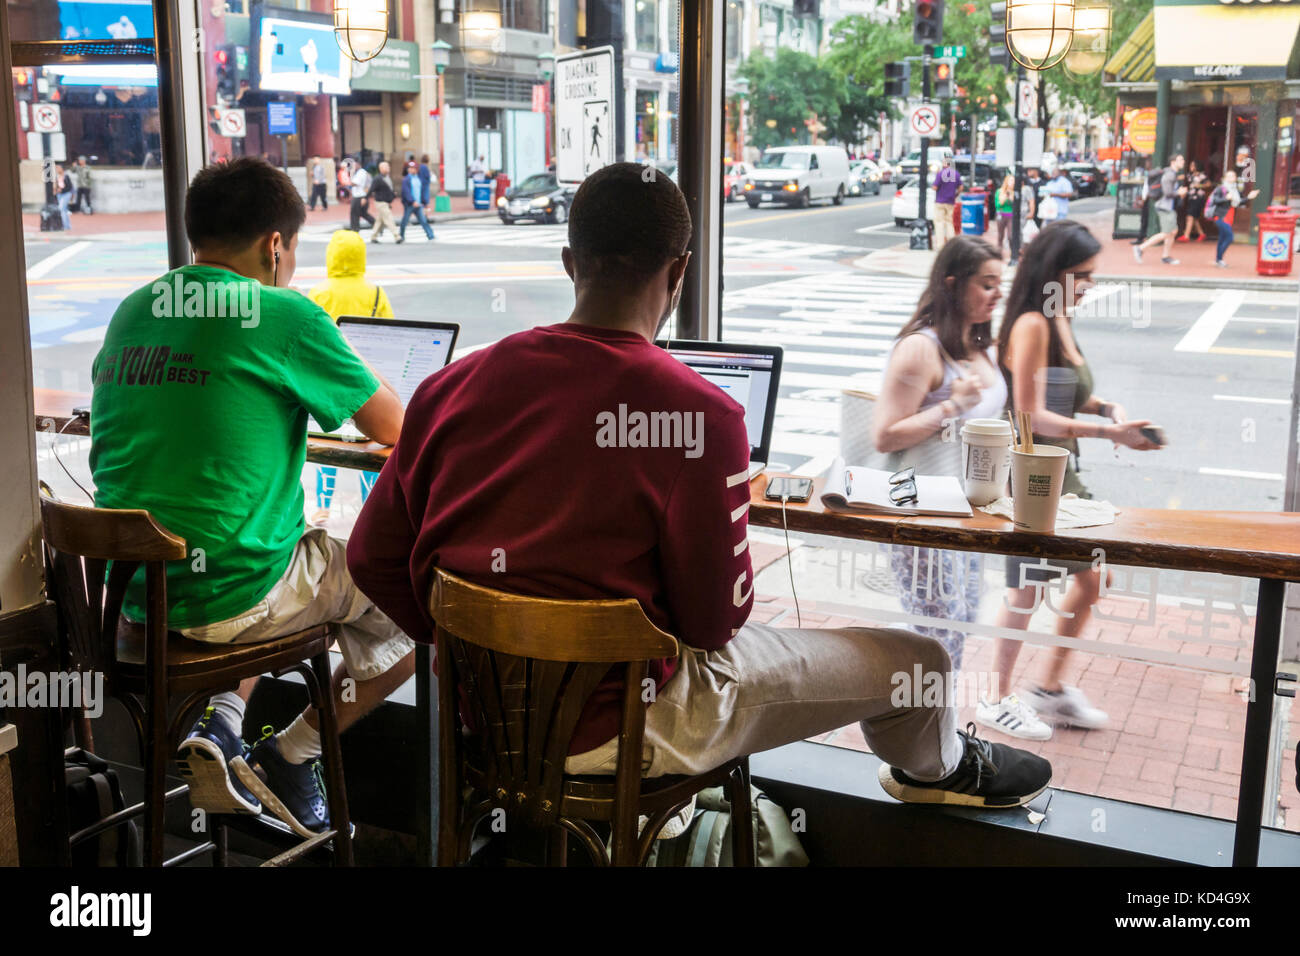 Washington DC, Chinatown, quartier ethnique asiatique, Starbucks, compagnie de café, café, intérieur, patron, Black Asians, homme hommes homme homme, ordinateur portable, vue Banque D'Images